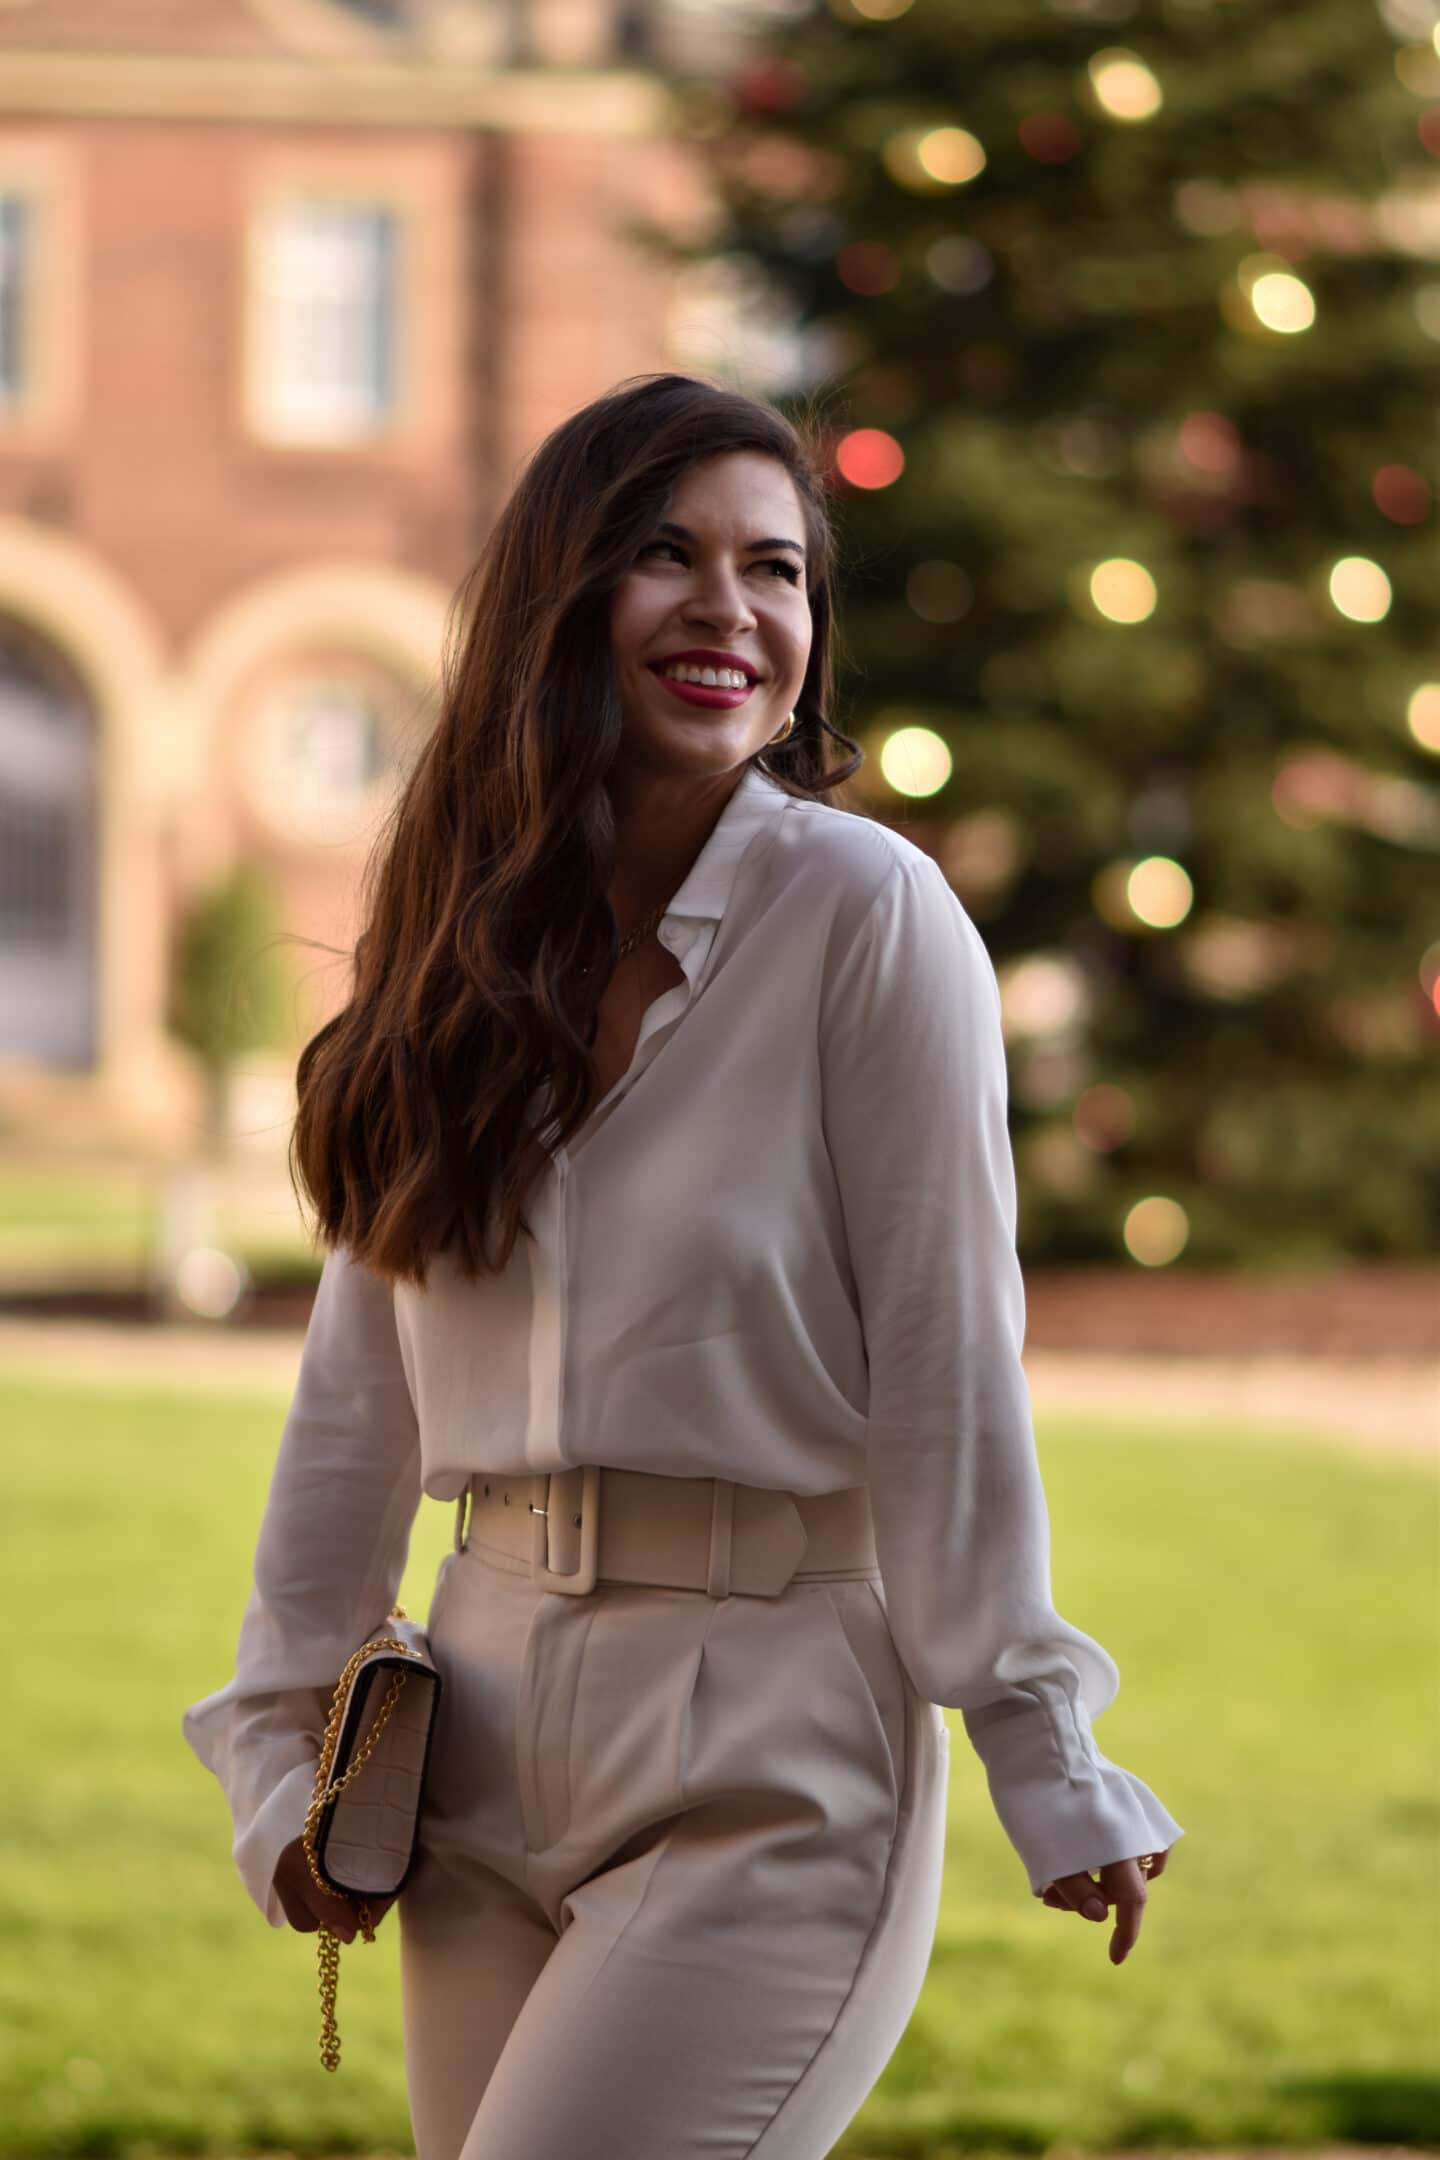 Weiße Bluse im monochromen Look - mein Weihnachtsoutfit 2020